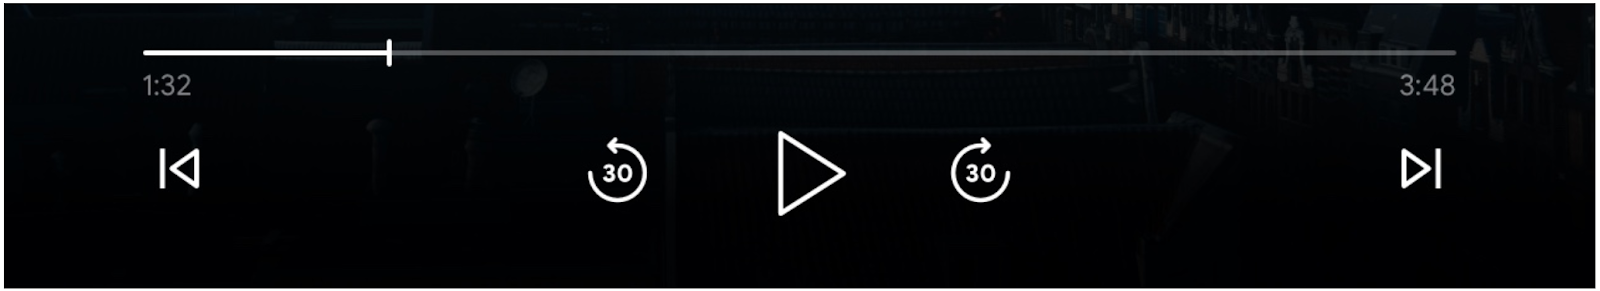 メディア プレーヤー コントロールの画像: 進行状況バー、再生ボタン、前へスキップボタン、後方にスキップ、ボタン、前へキューに入れる、ボタンを有効にする